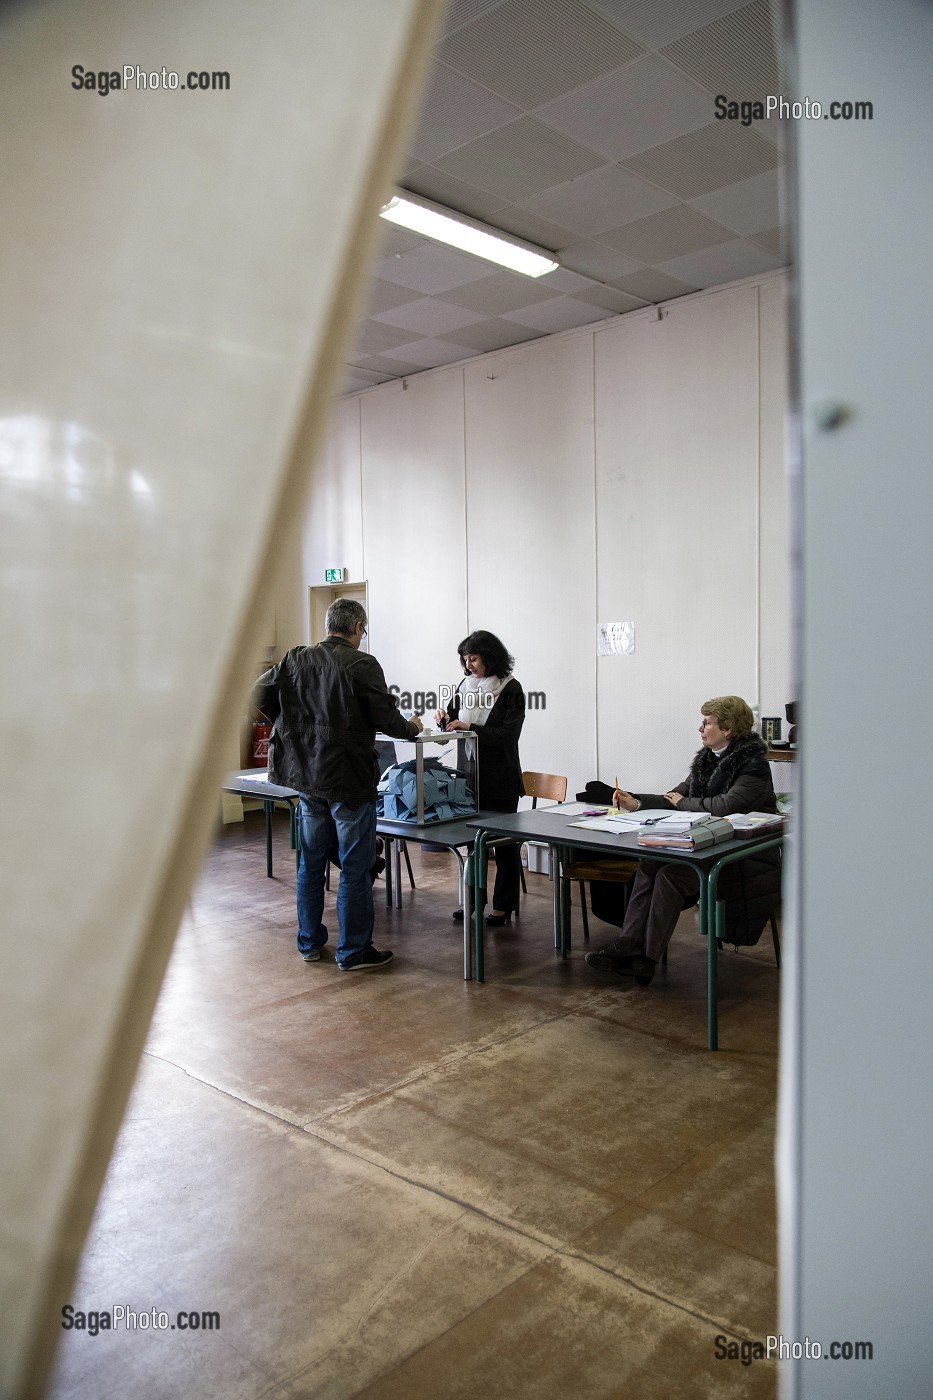 L'ISOLOIR DU BUREAU DE VOTE DES ELECTIONS MUNICIPALES, RUGLES, EURE (27), FRANCE 